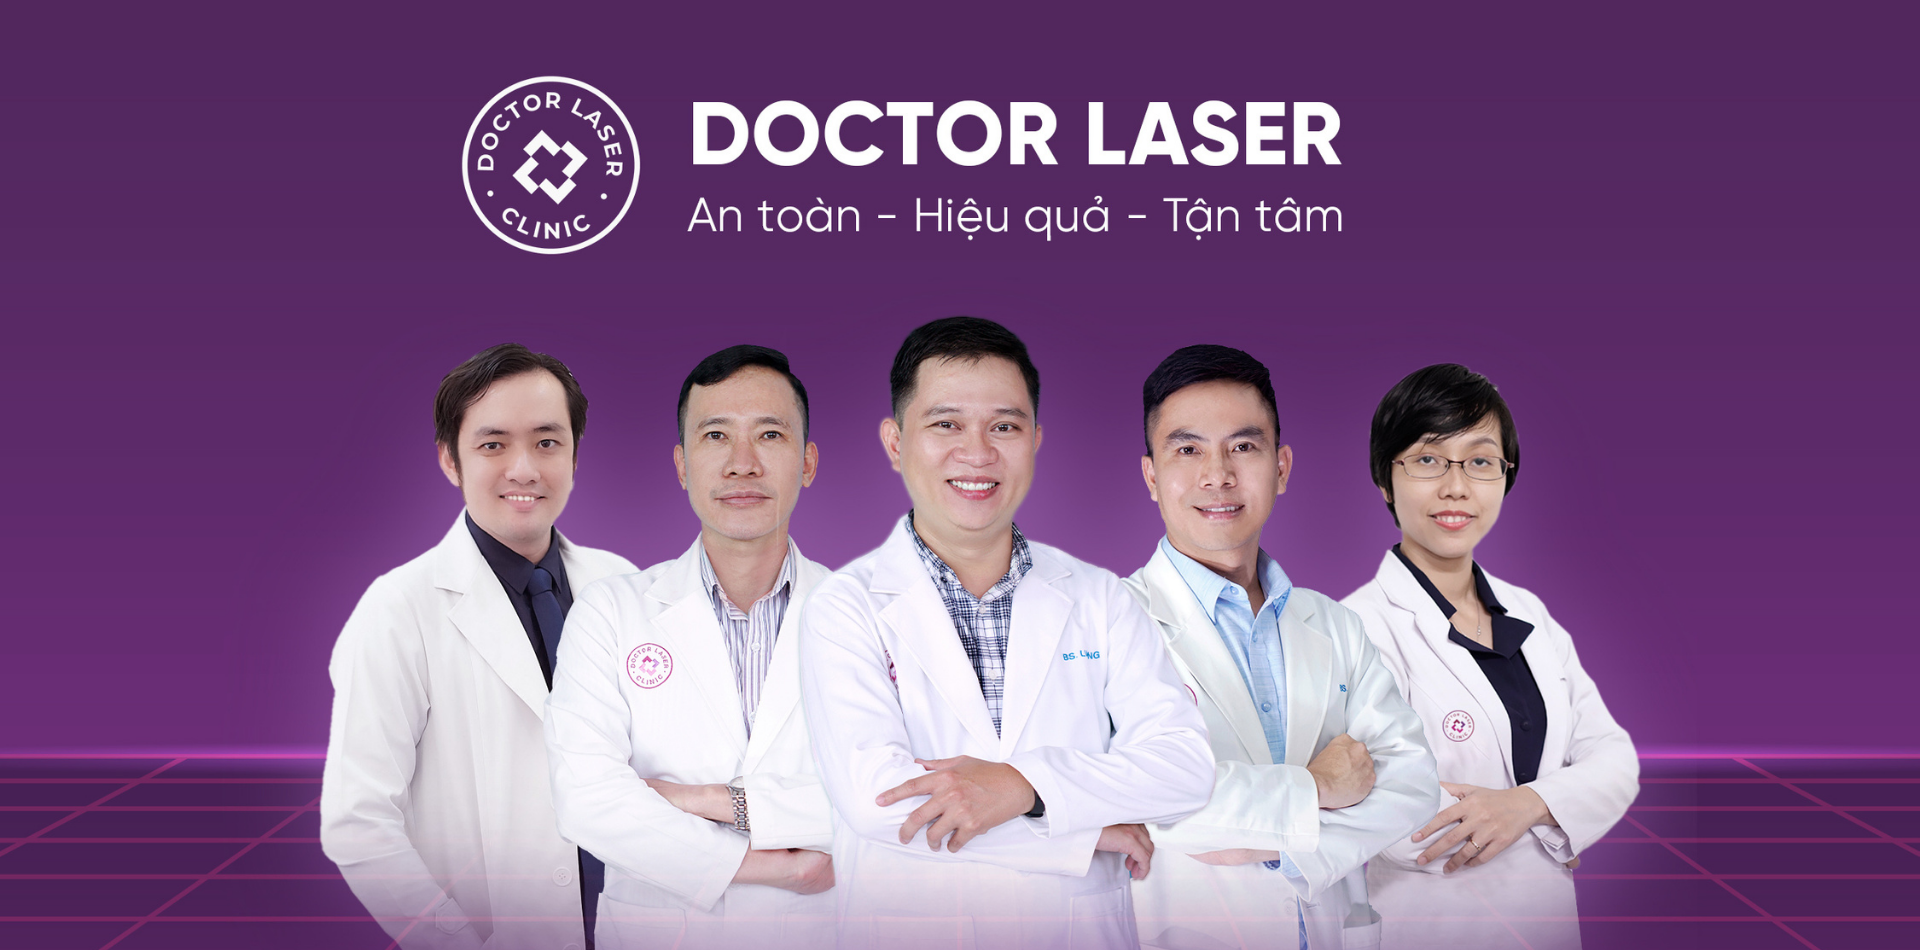 Doctor Laser - Phòng khám thẩm mỹ, tiêm botox uy tín 